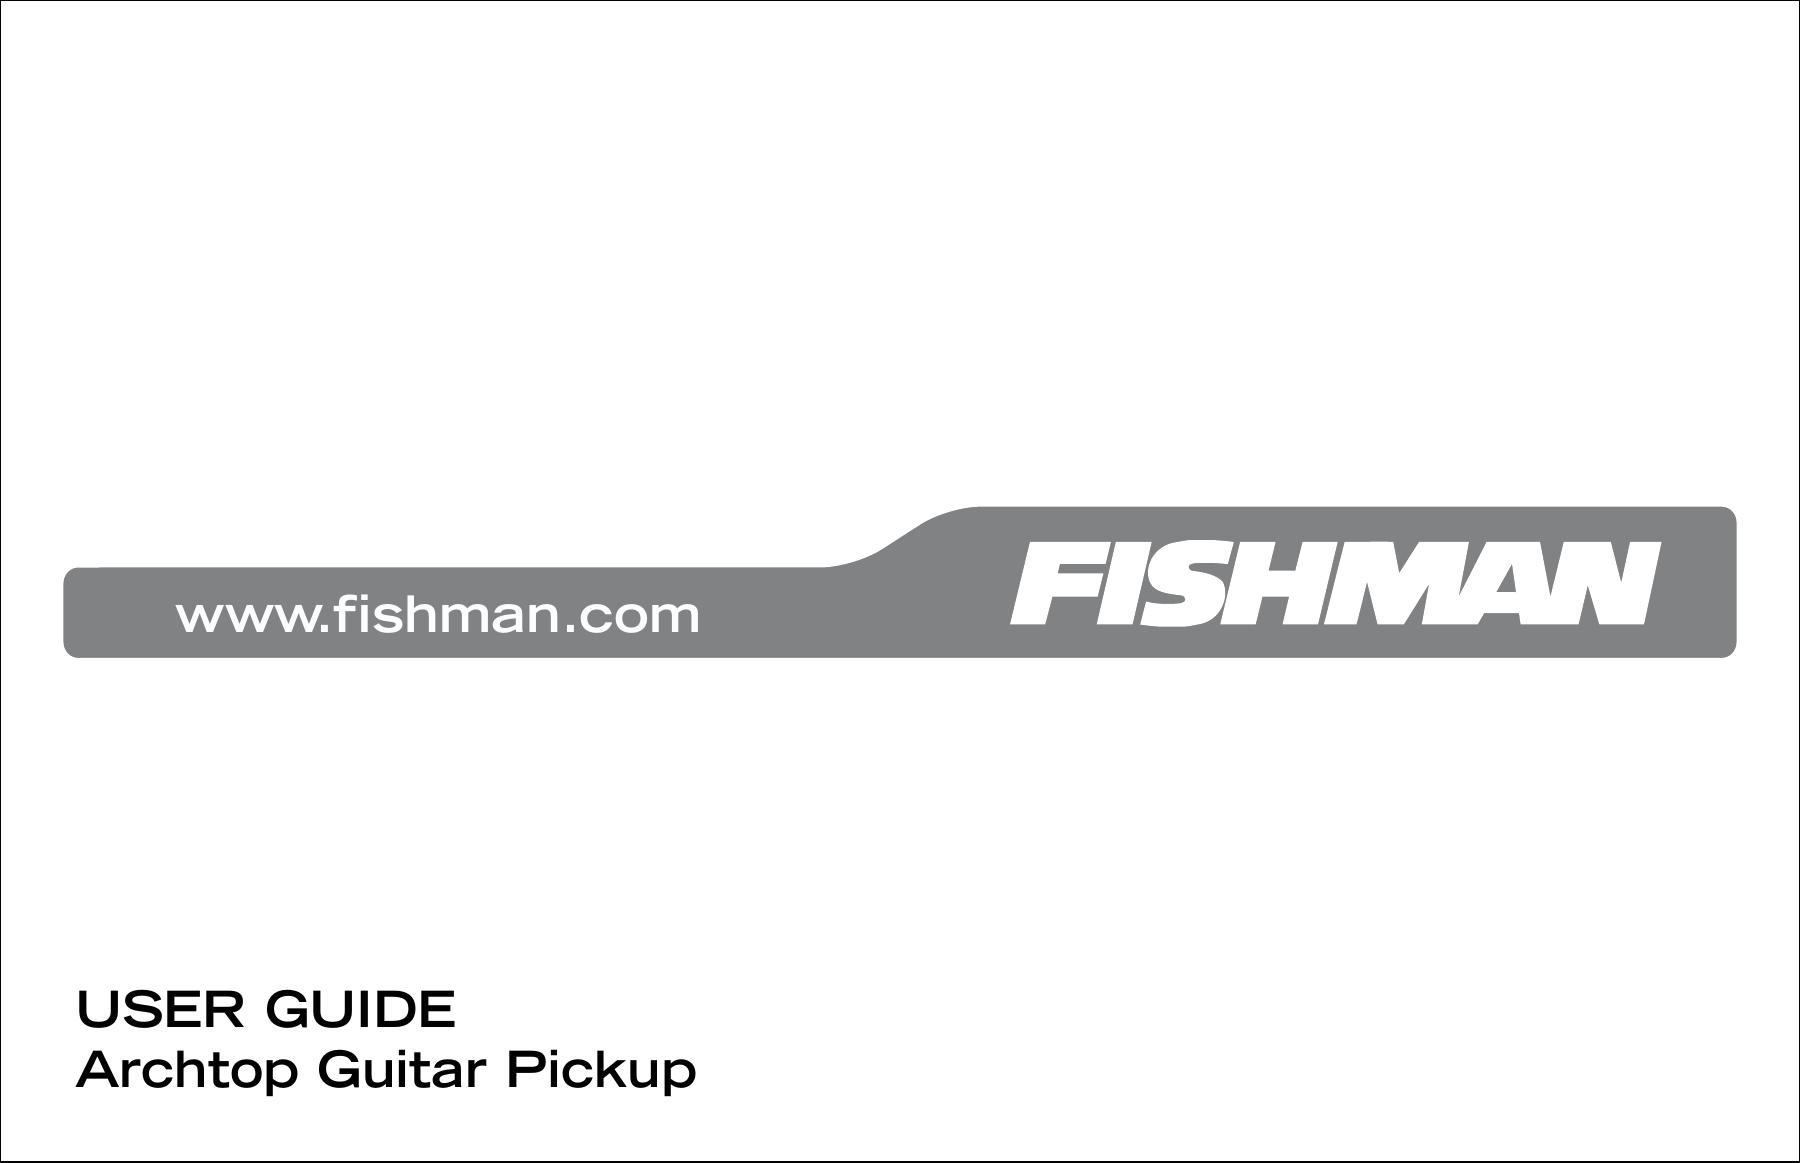 Fishman Archtop Guitar Pickup Music Pedal User Manual